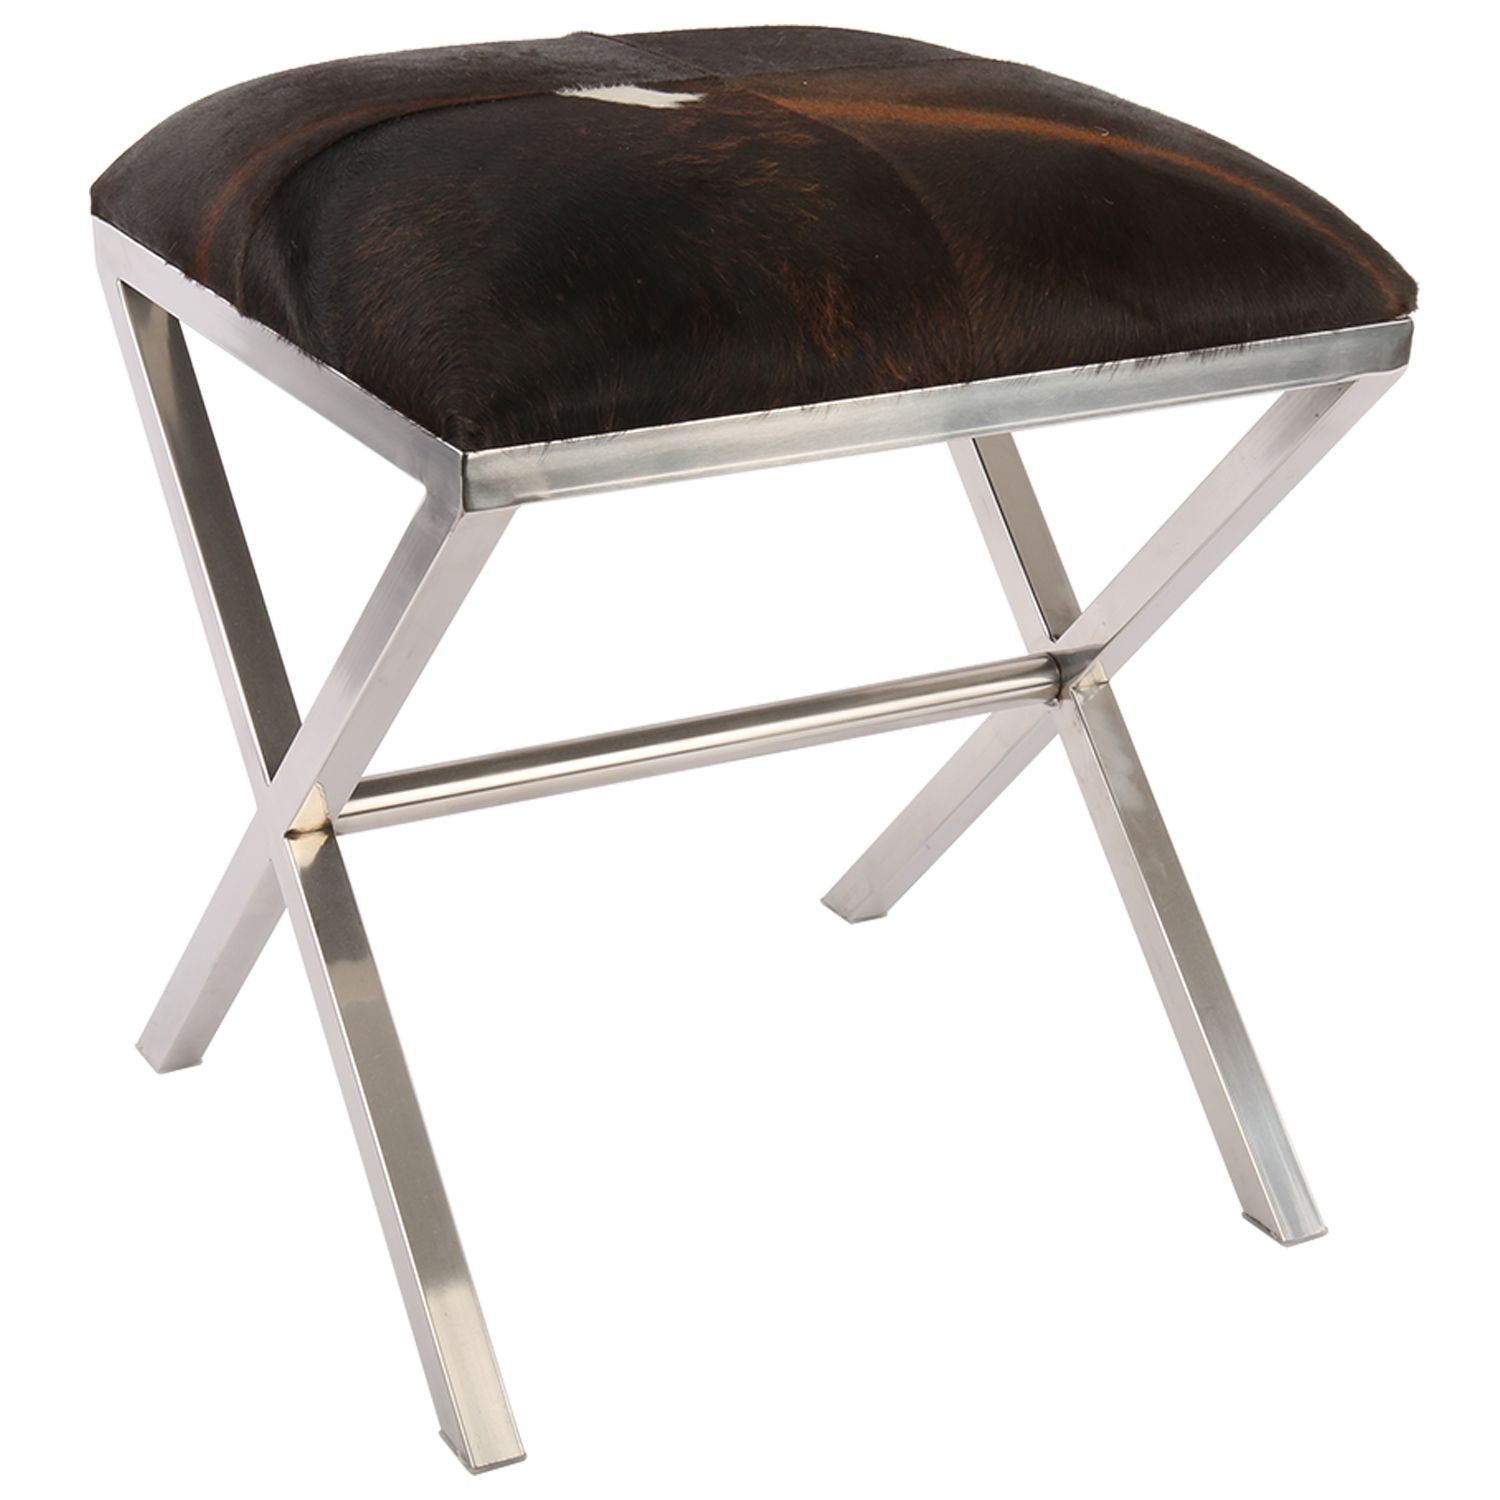 Kovová stolička Gotta s koženým sedákem - 45*45*53cm Collectione - LaHome - vintage dekorace